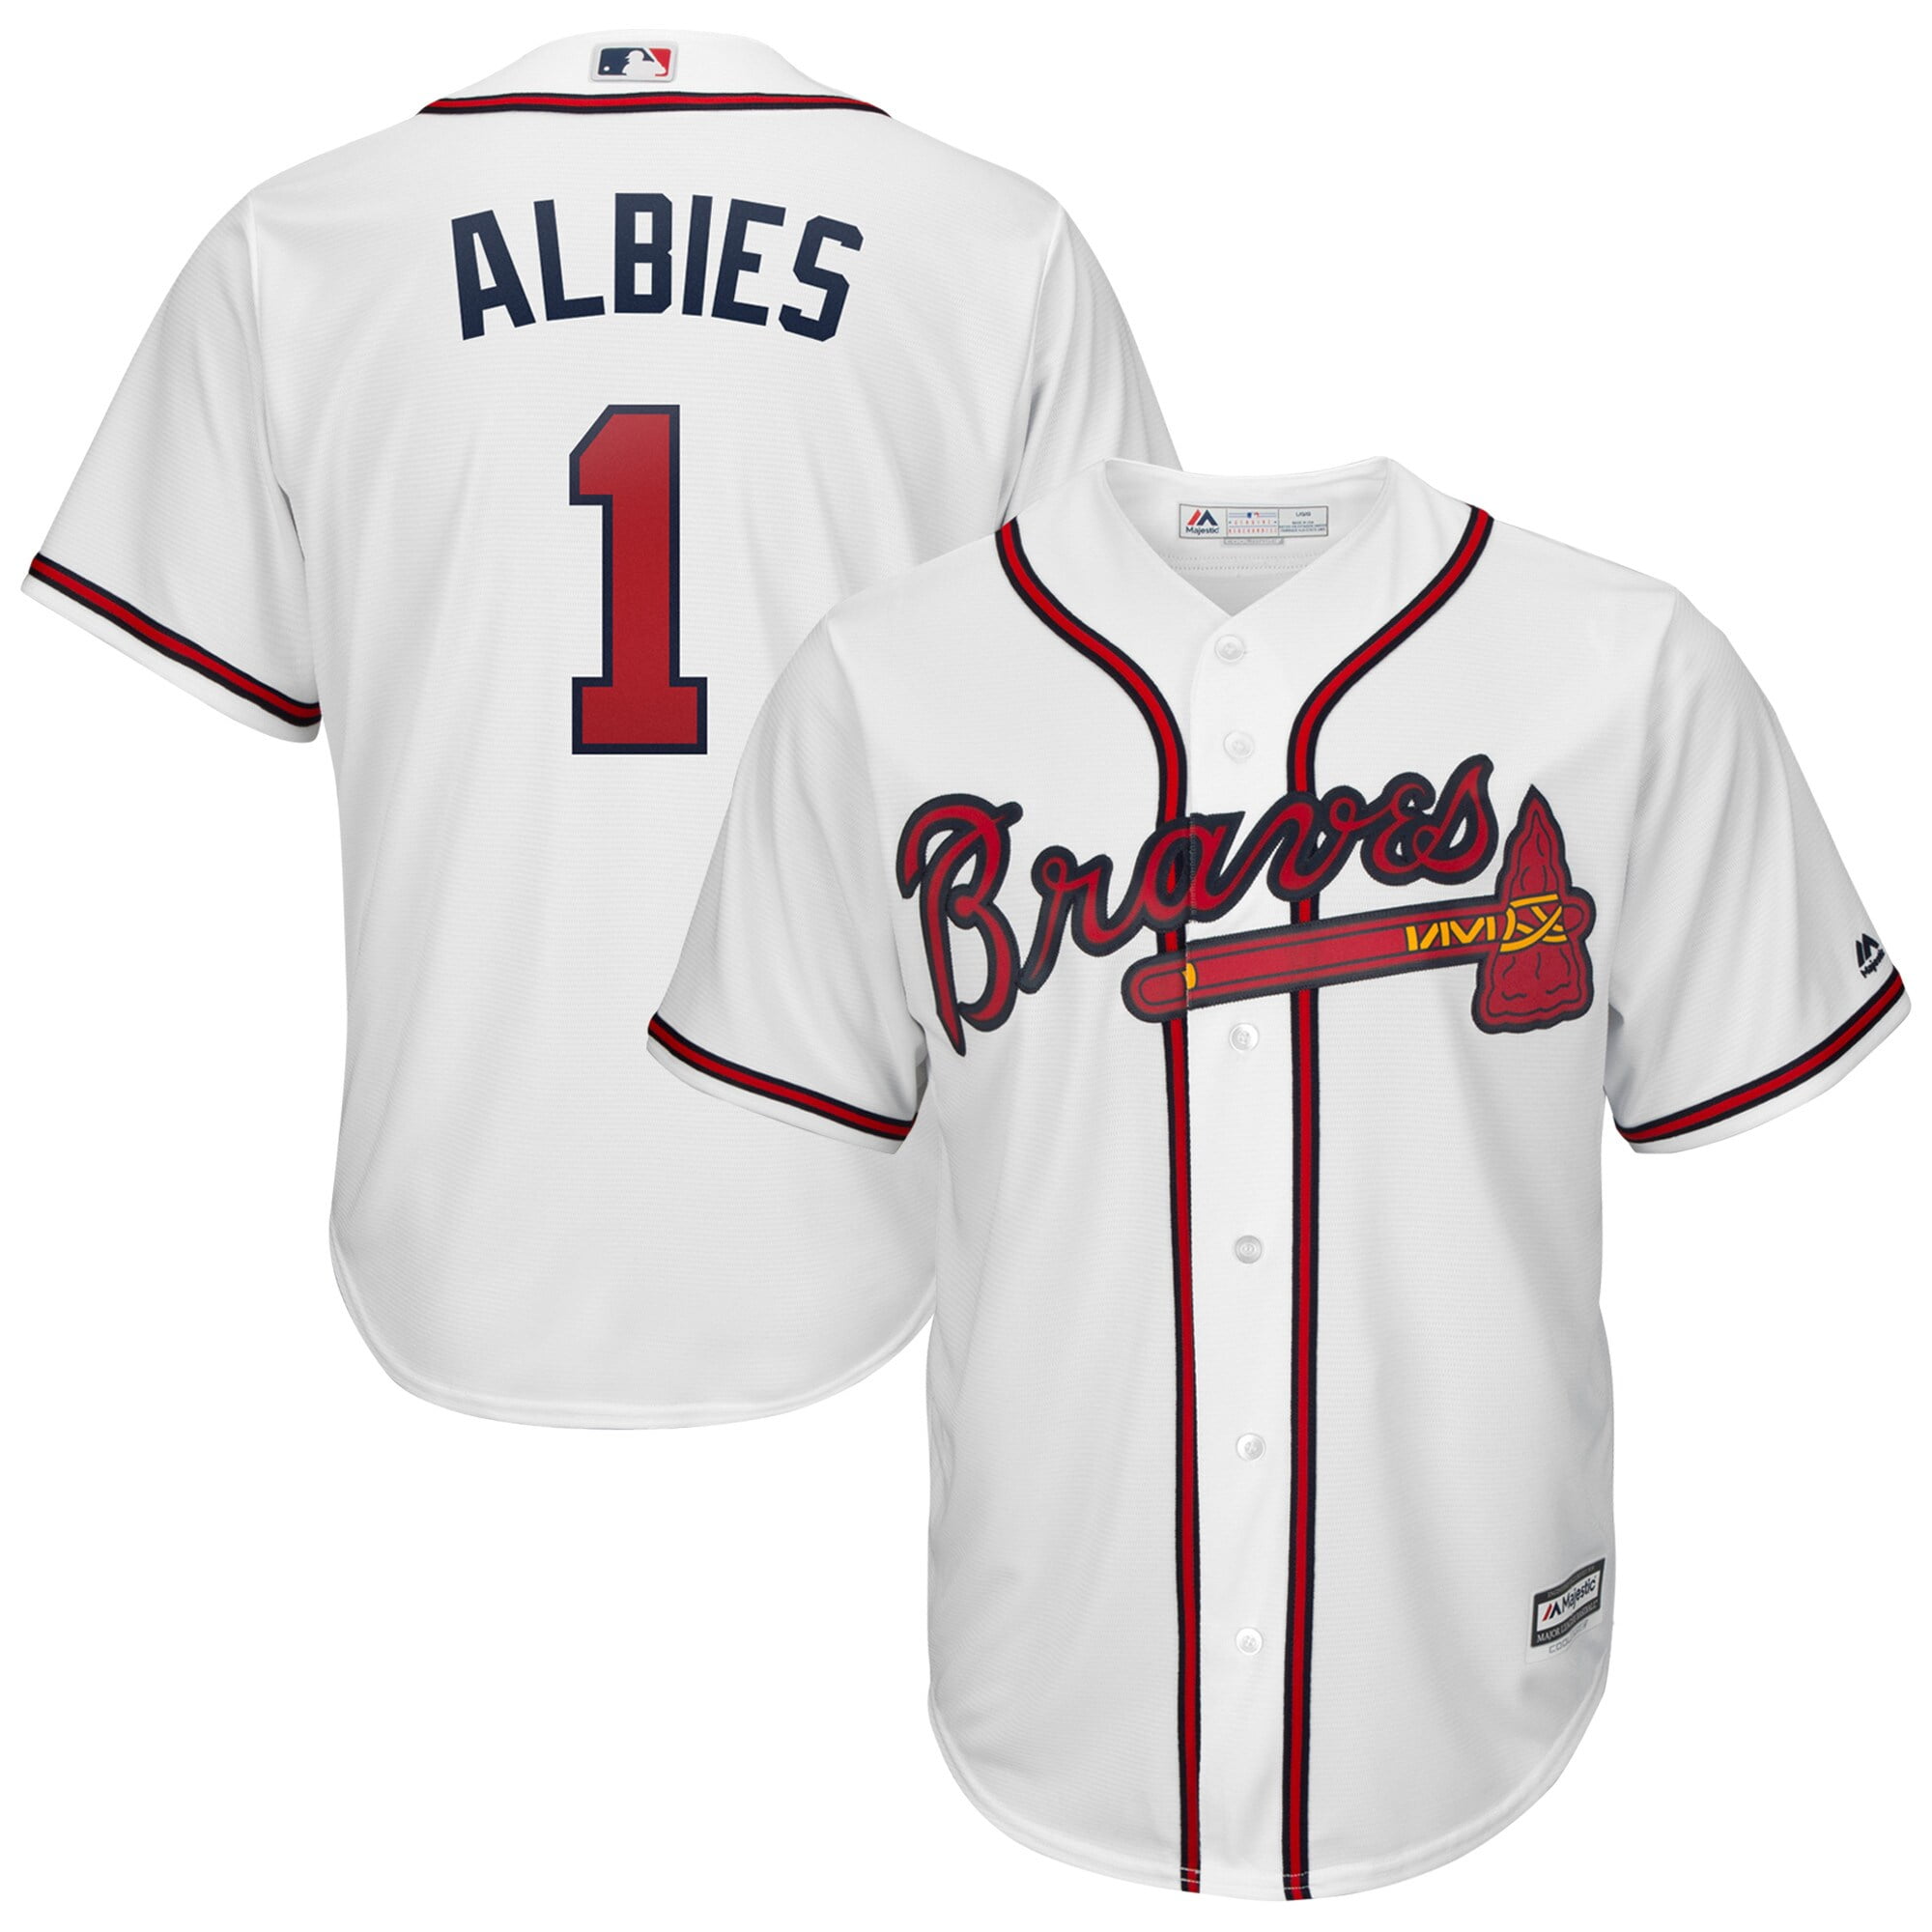 Ozzie Albies Atlanta Braves Majestic 2019 Home î€€Officialî€ Cool Base ...